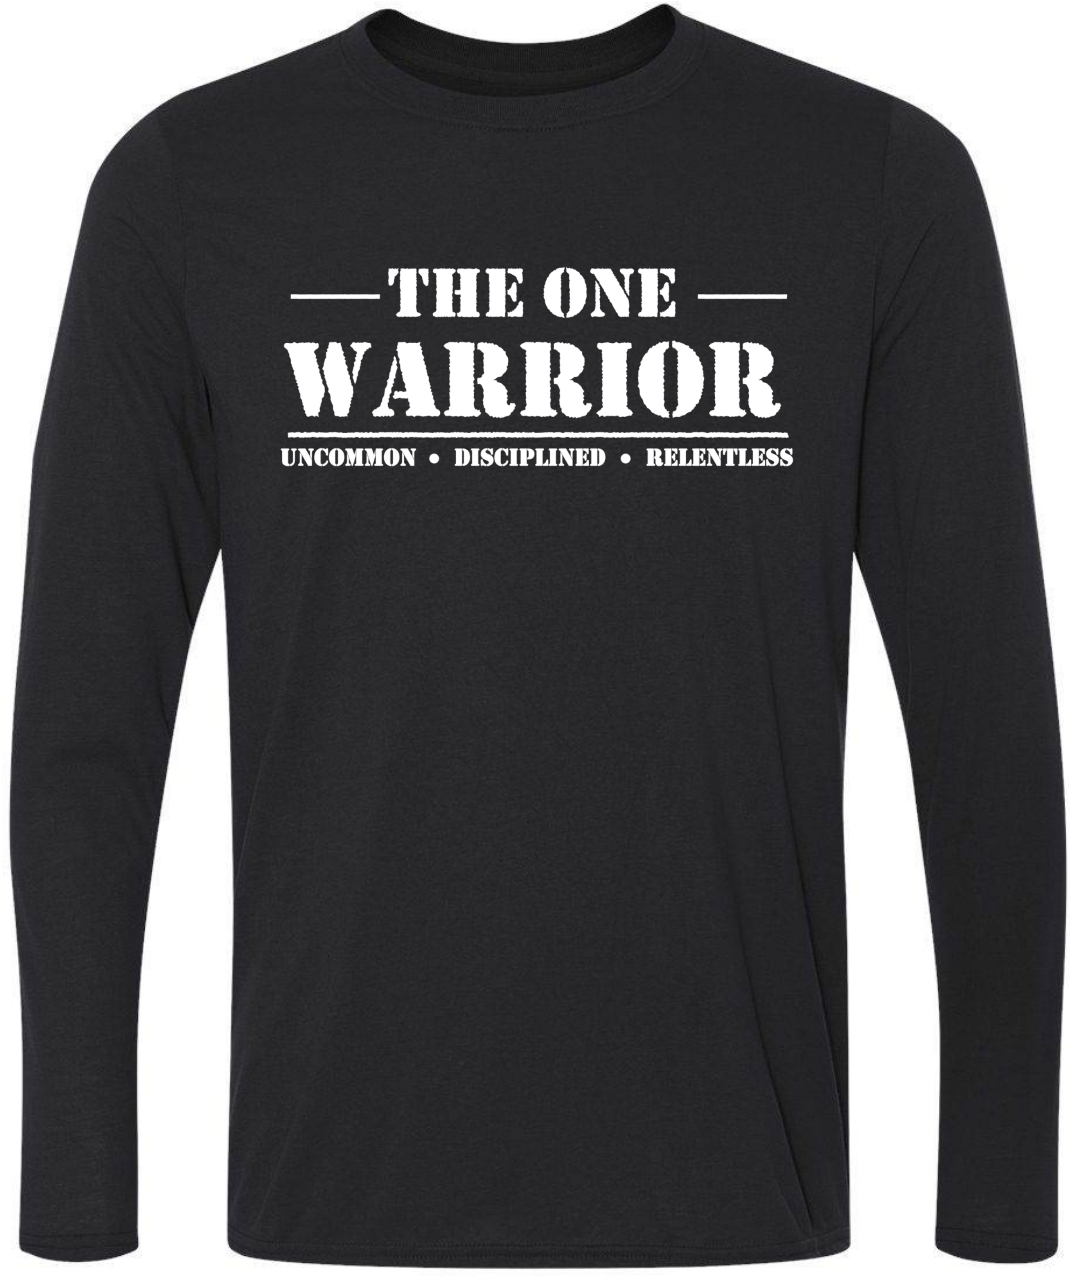 One Warrior Shirt